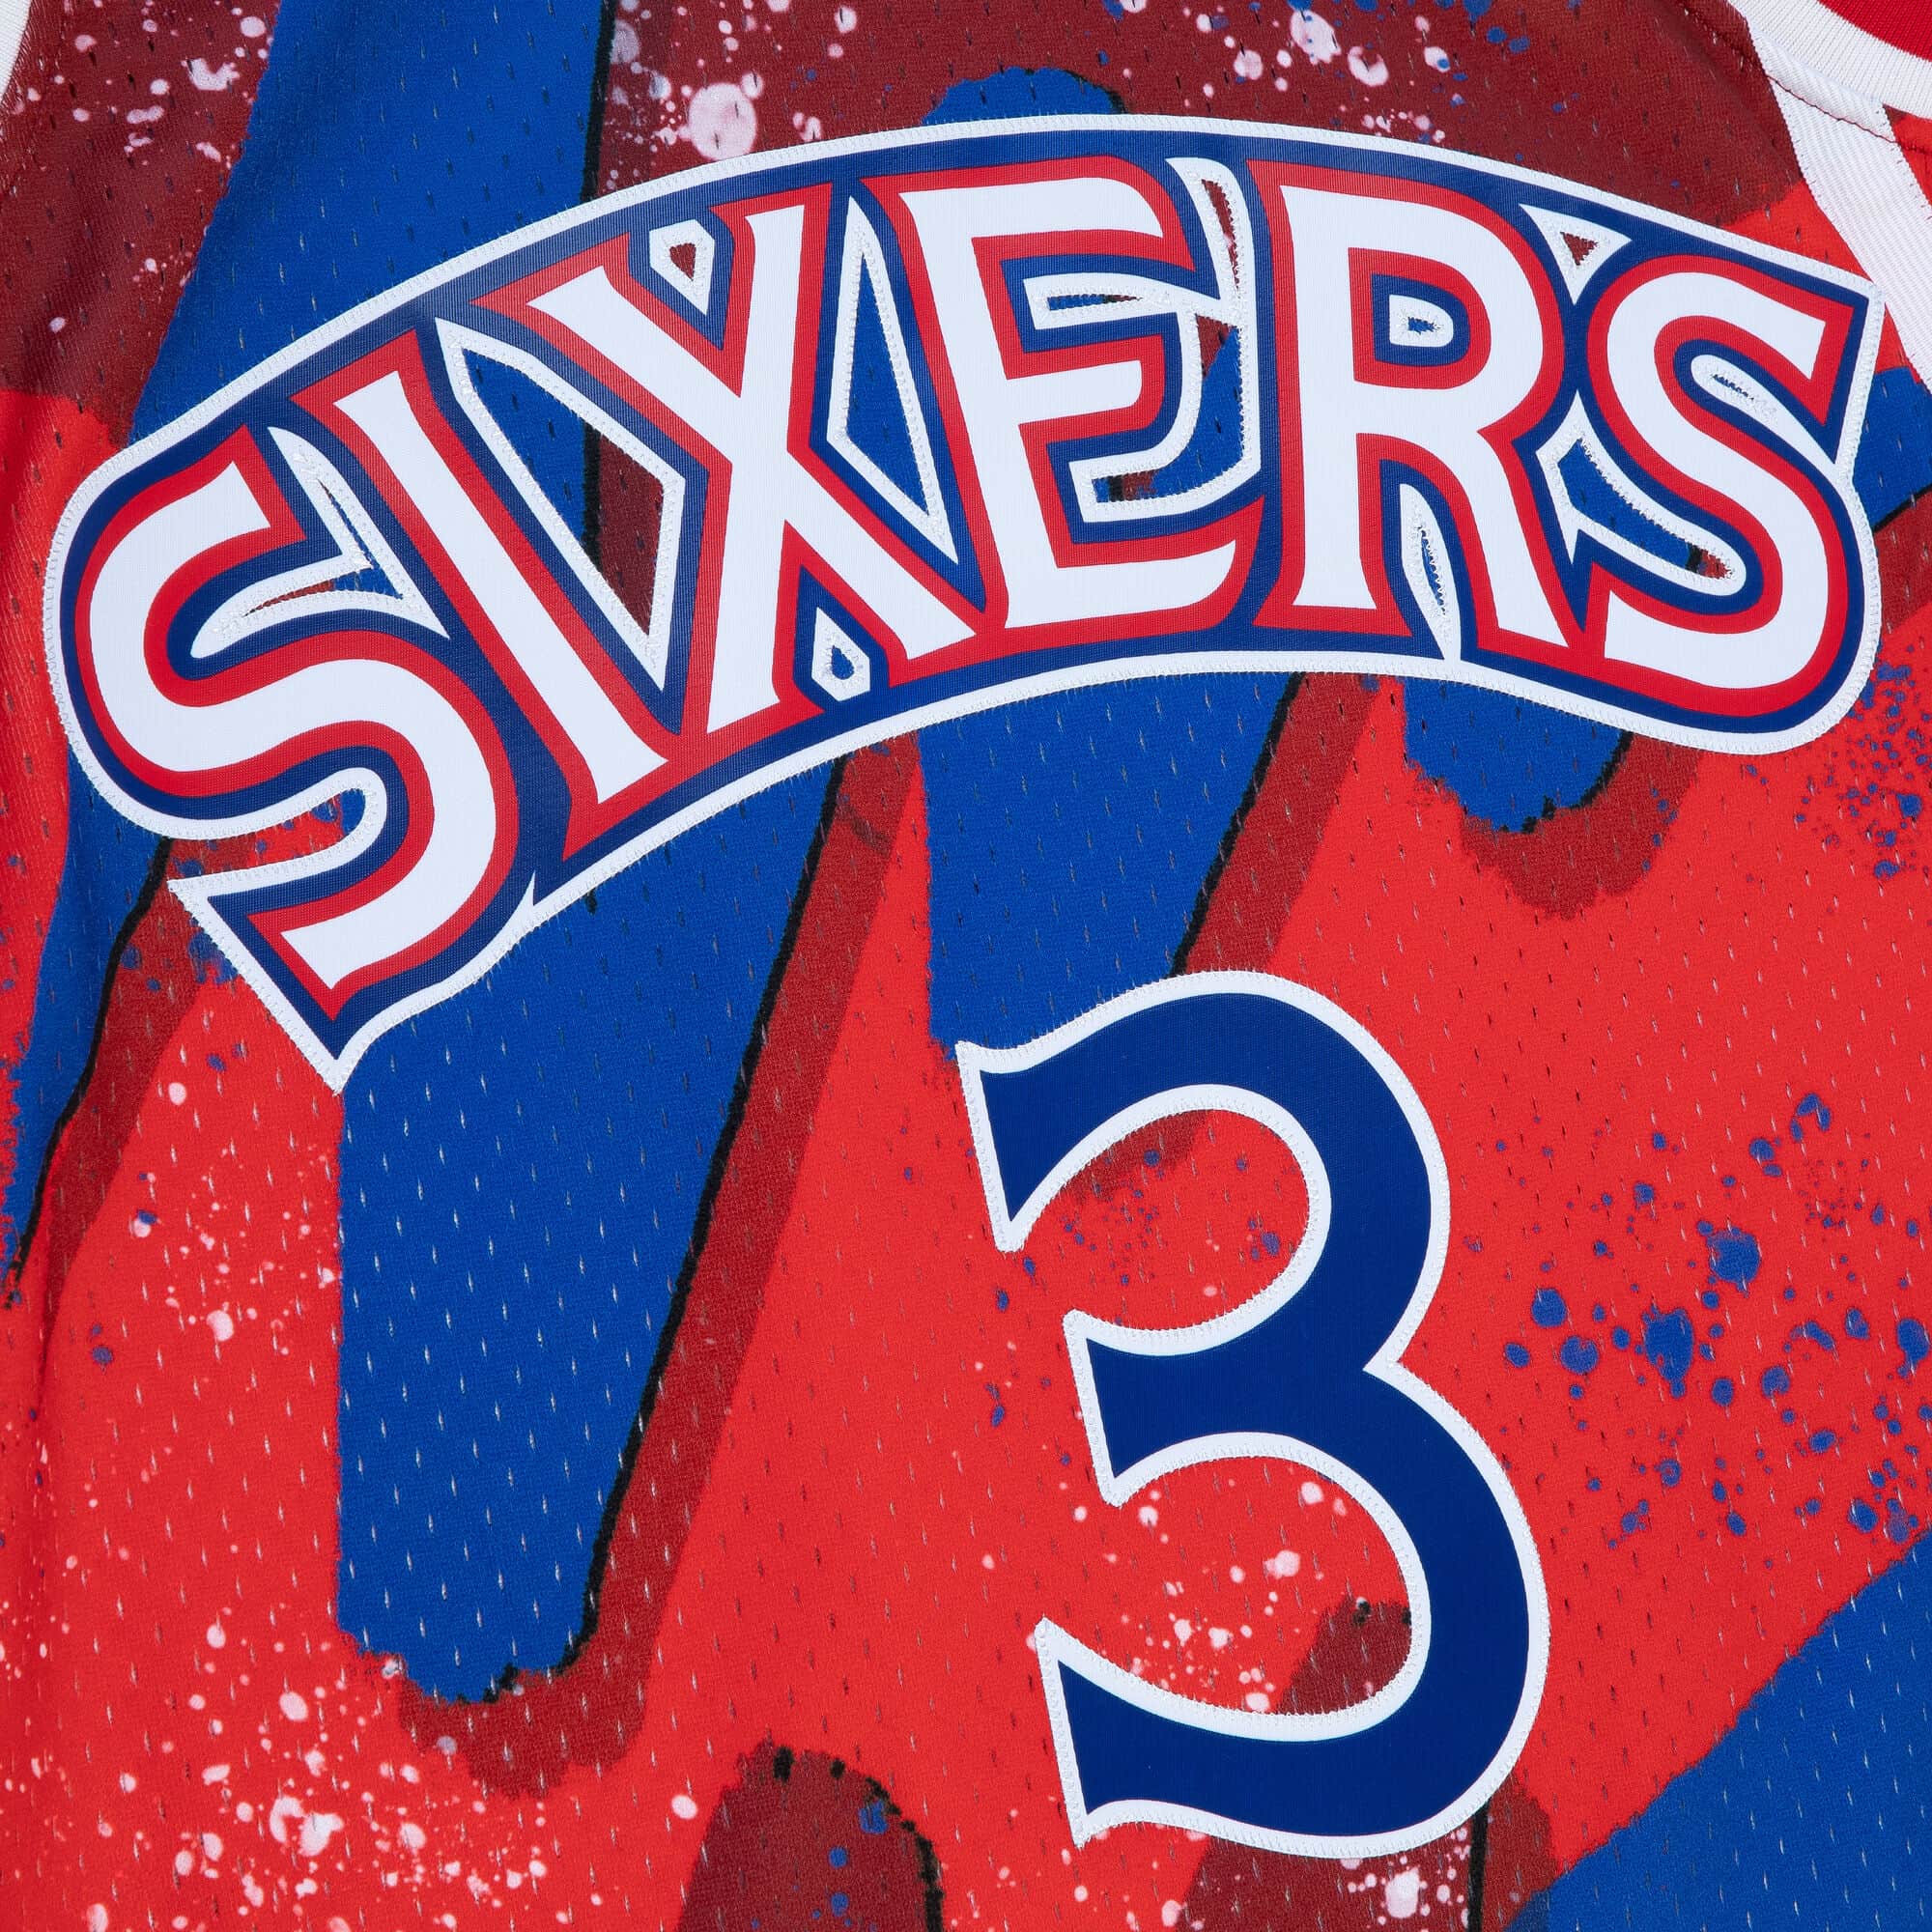 Philadelphia 76ers Hyper Hoops Swingman Jersey - Allen Iverson By Mitchell  & Ness - Scarlett - Mens